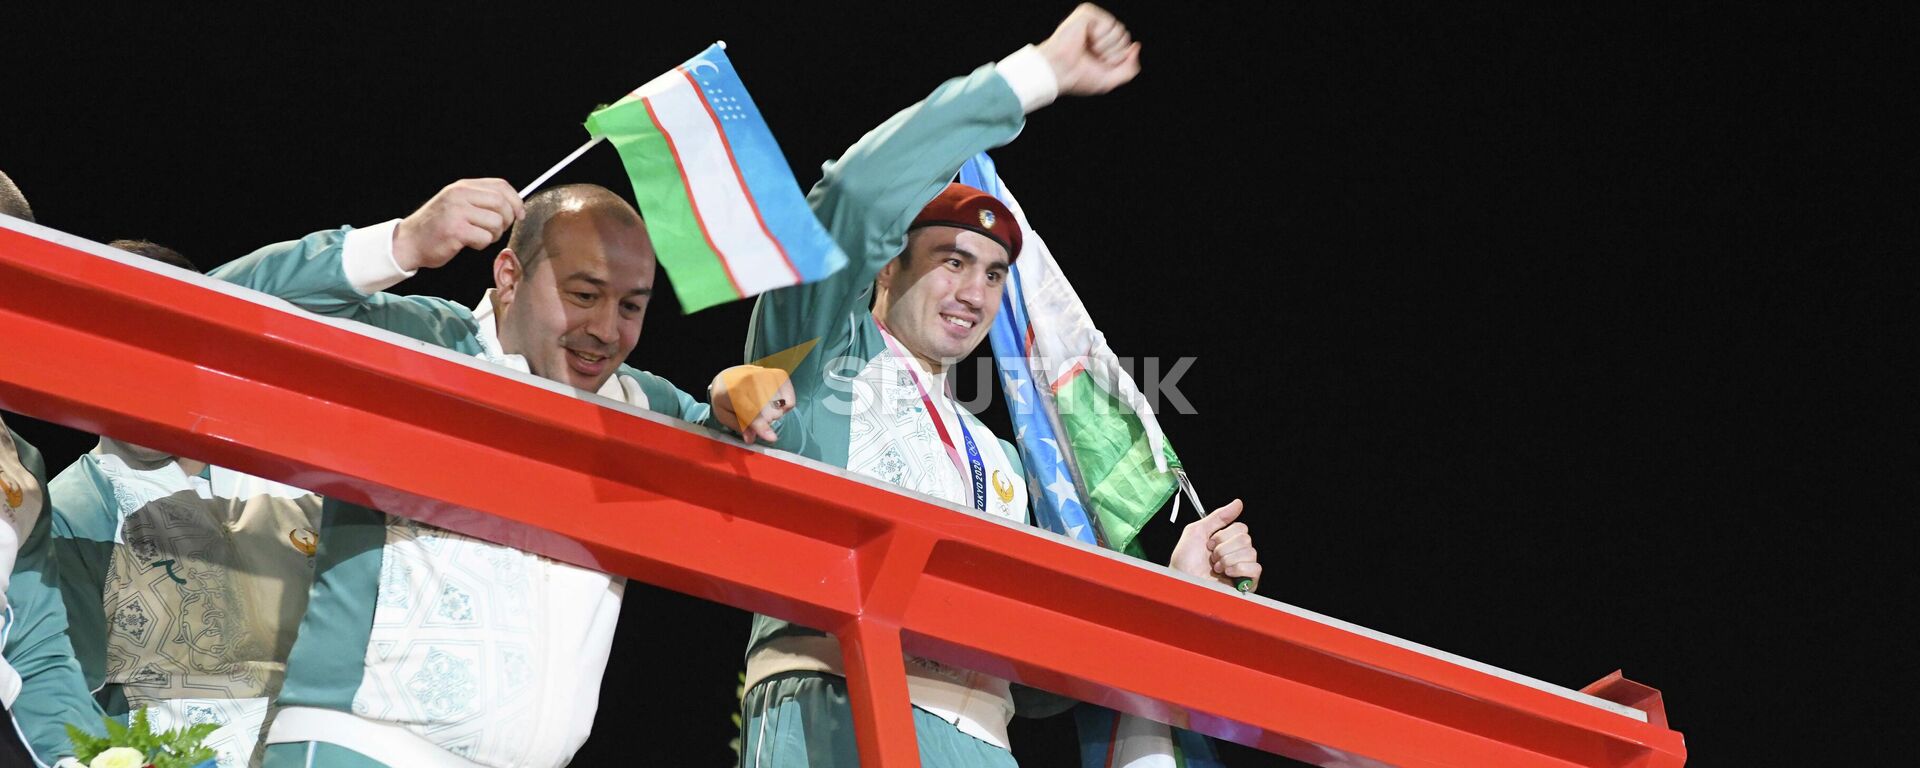 Vstrecha olimpiyskoy sbornoy Uzbekistana v Tashkente posle Igr v Tokio - Sputnik O‘zbekiston, 1920, 10.08.2021